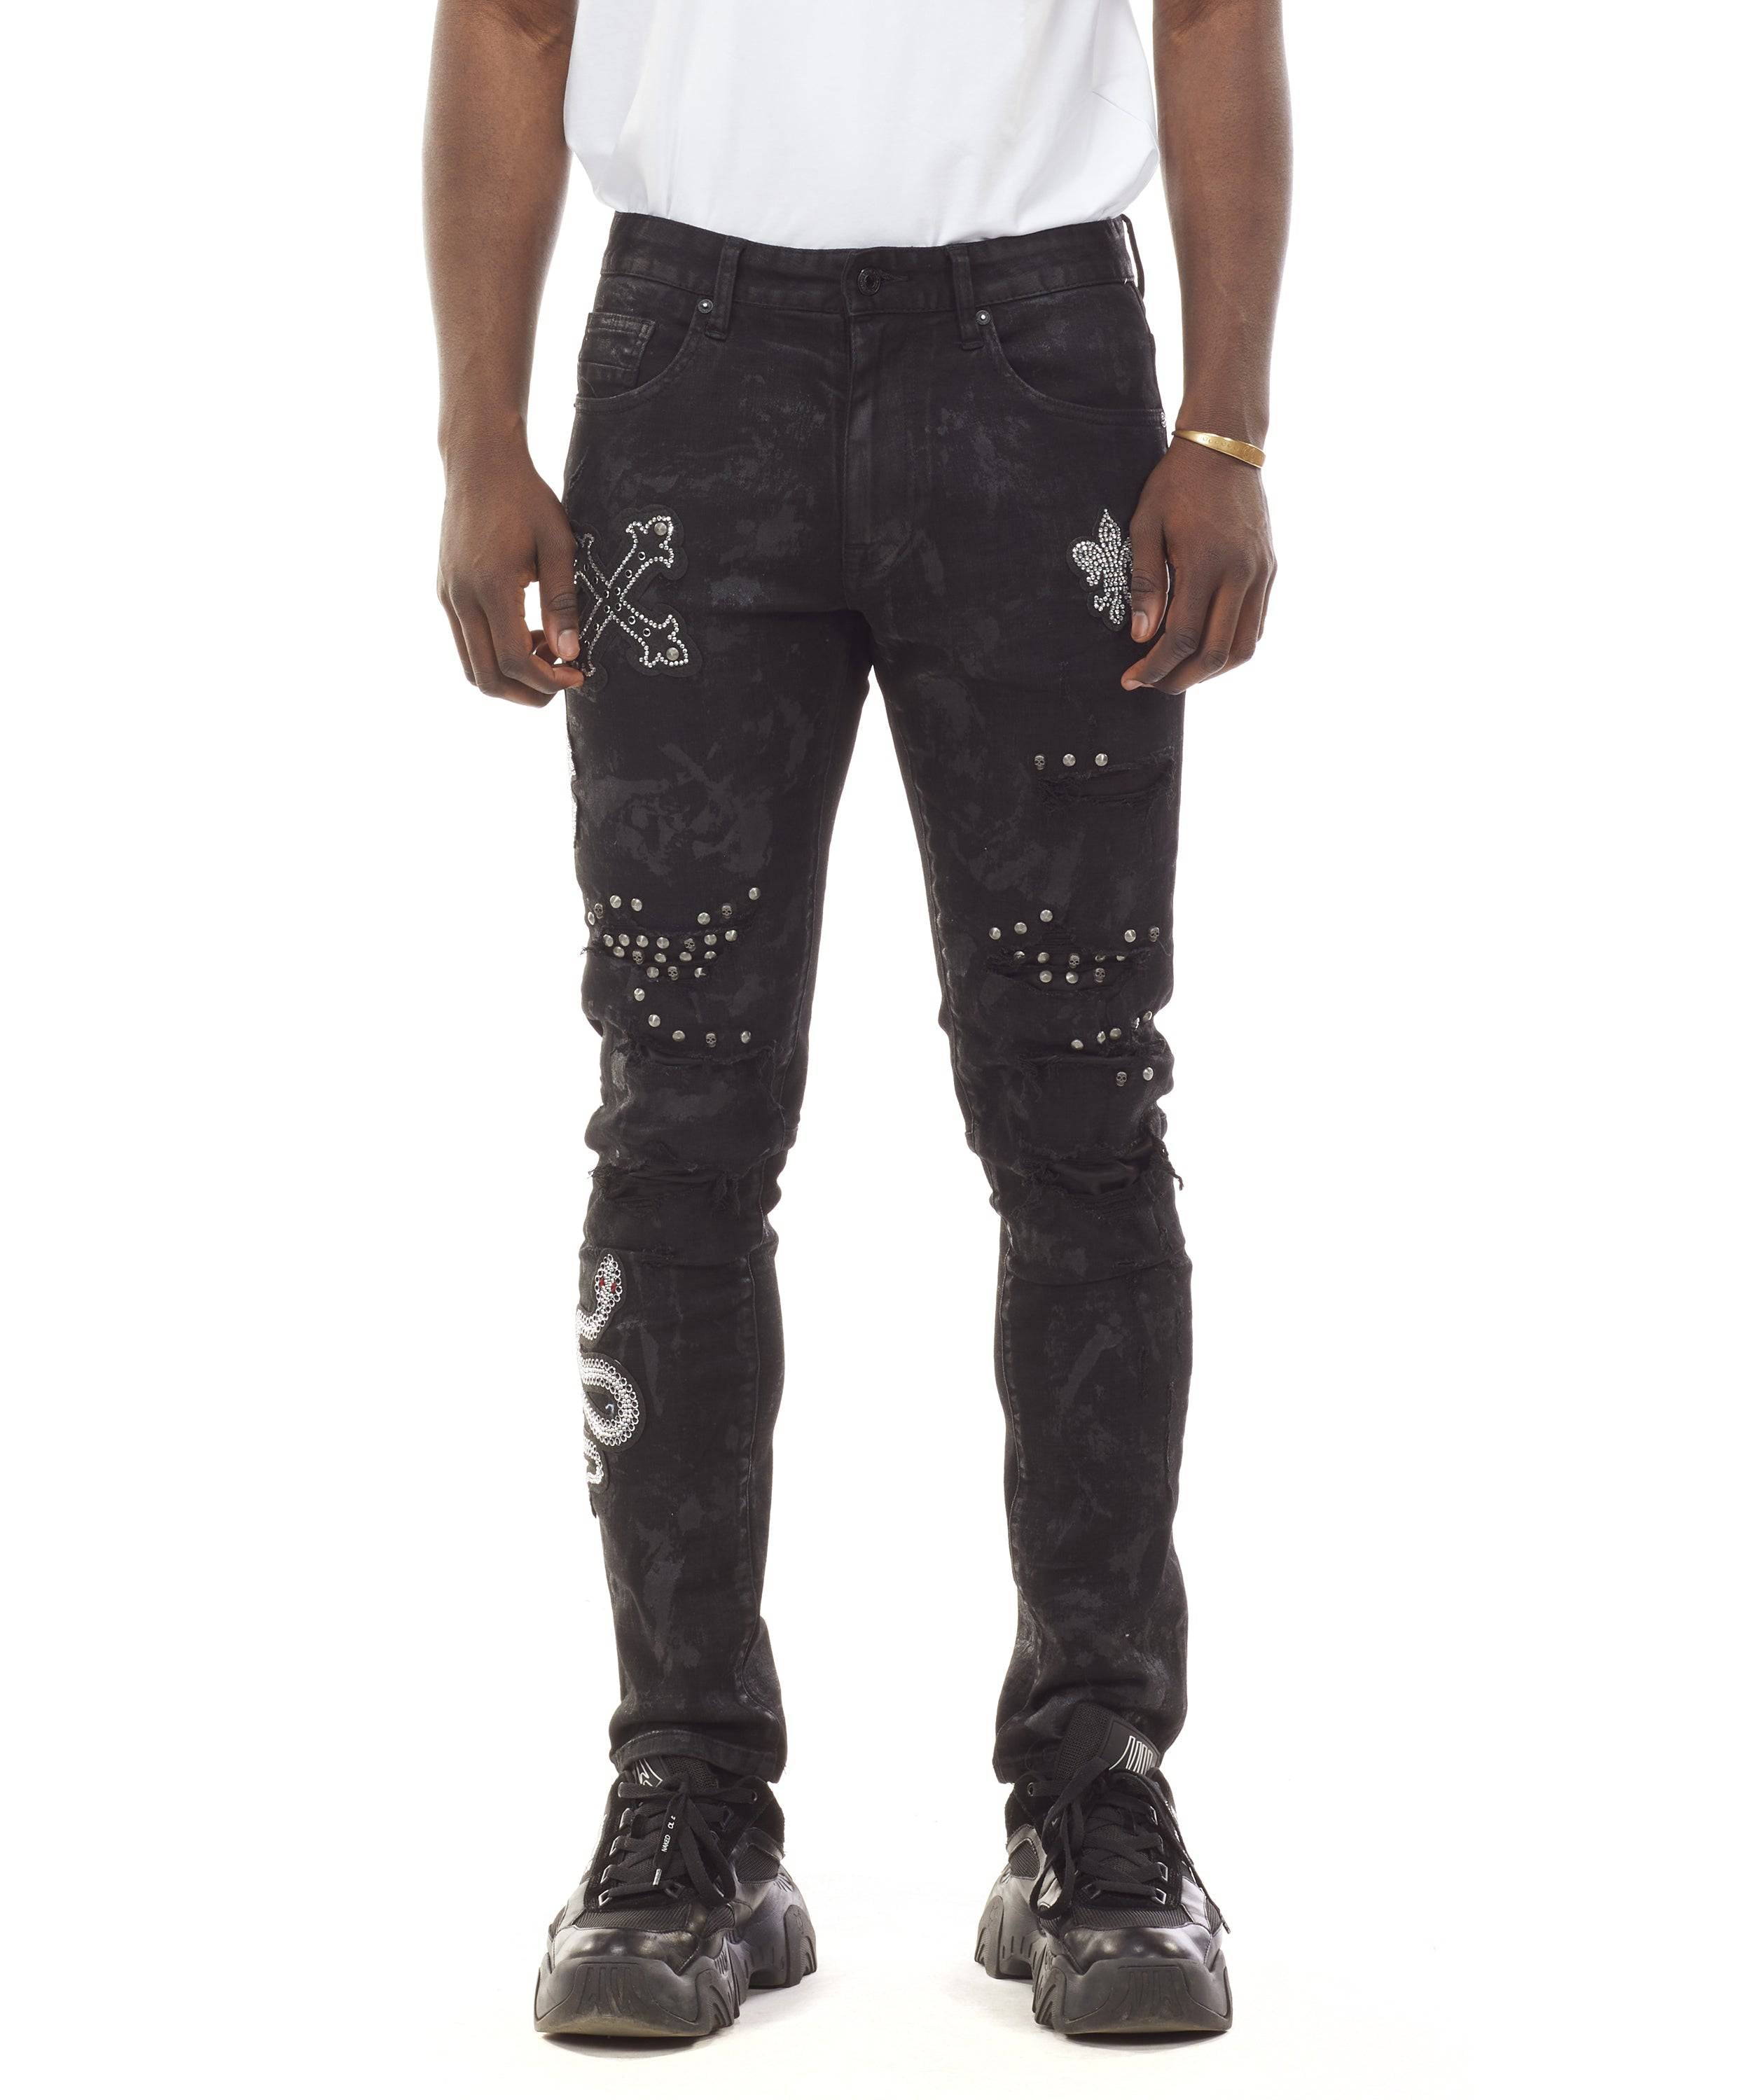 Gothic Fashion Jeans - Coal Black - Smoke Rise